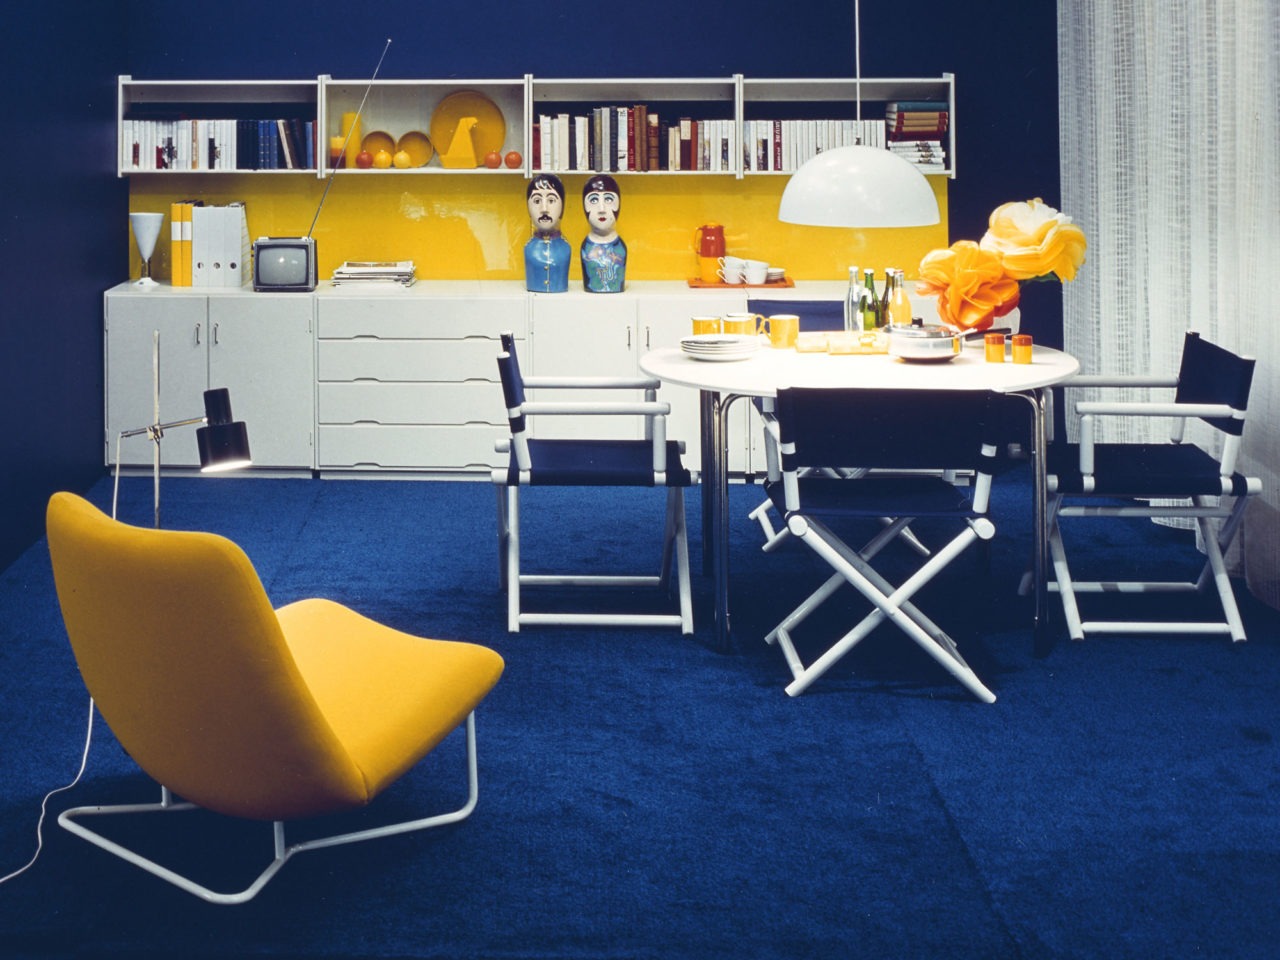 Raum in Blau, Weiß und Gelb. Langes, weißes Aufbewahrungsmöbel, Esstisch mit Regisseurstühlen, gelber Sessel, blauer Teppich.